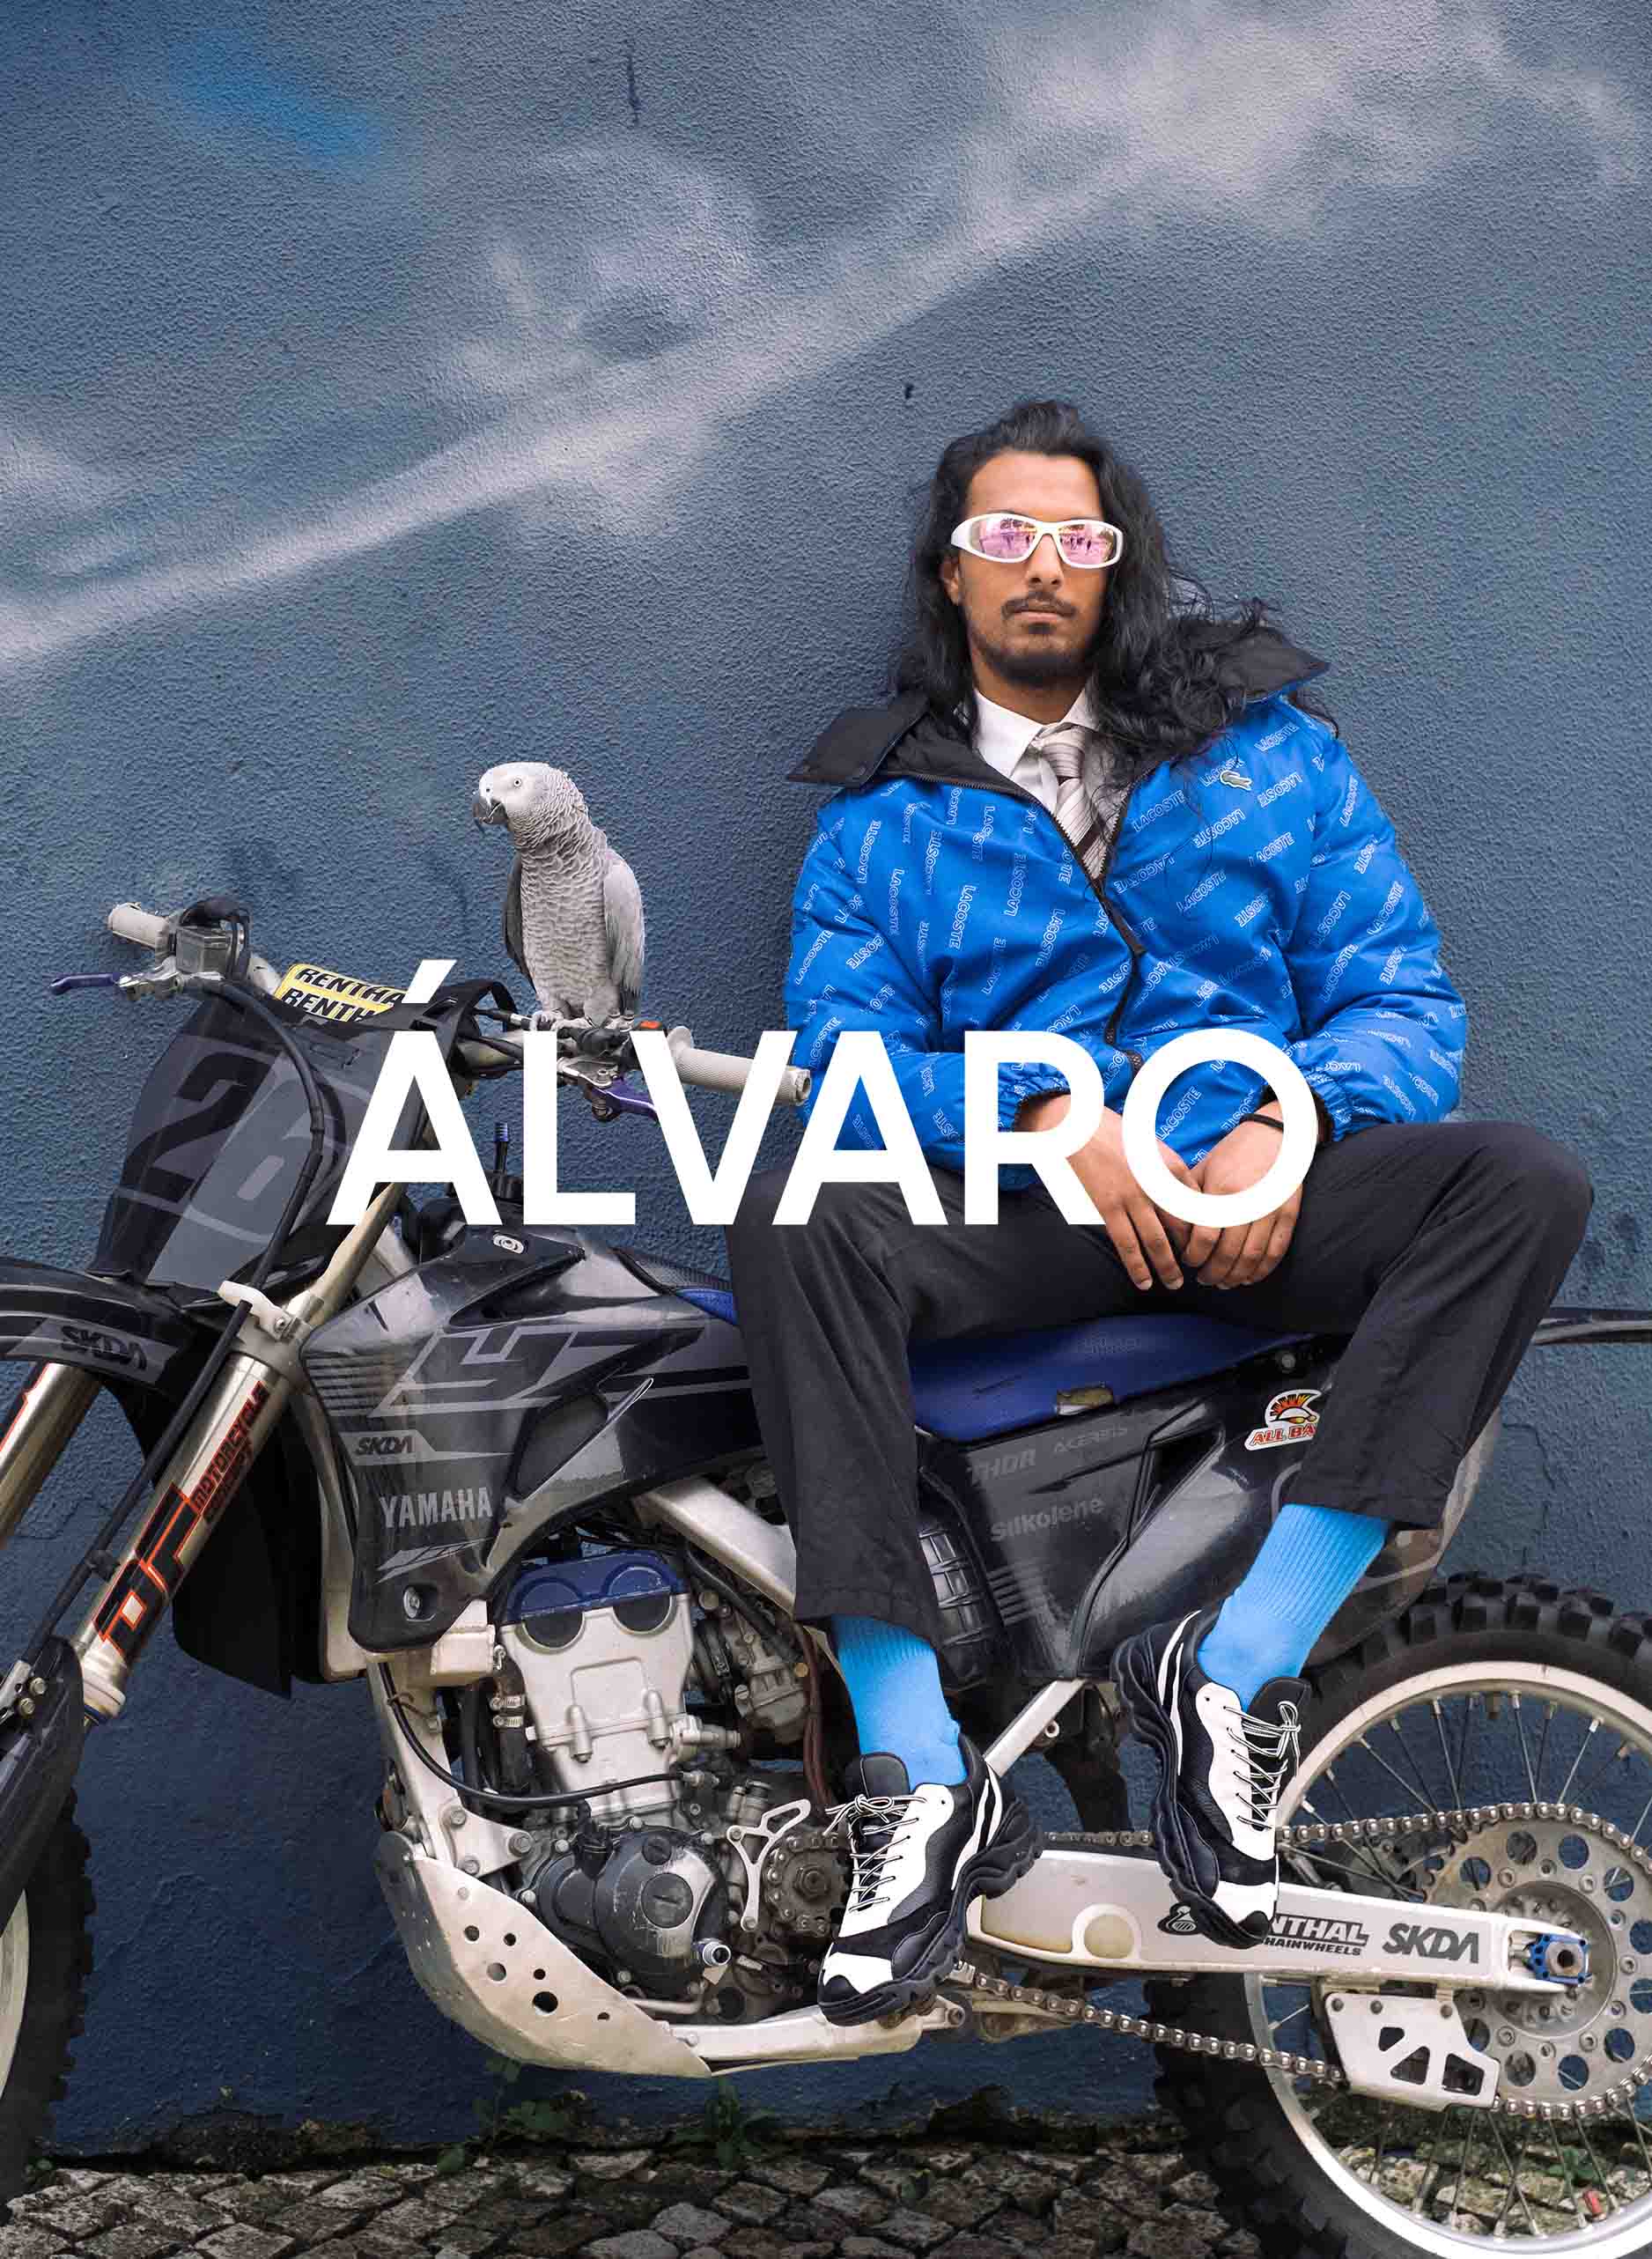 Un homme appelé Álvaro assis sur une moto avec un oiseau, portant Diverge sneakers, la promotion des chaussures personnalisées et de l’impact social à travers le projet Imagine.